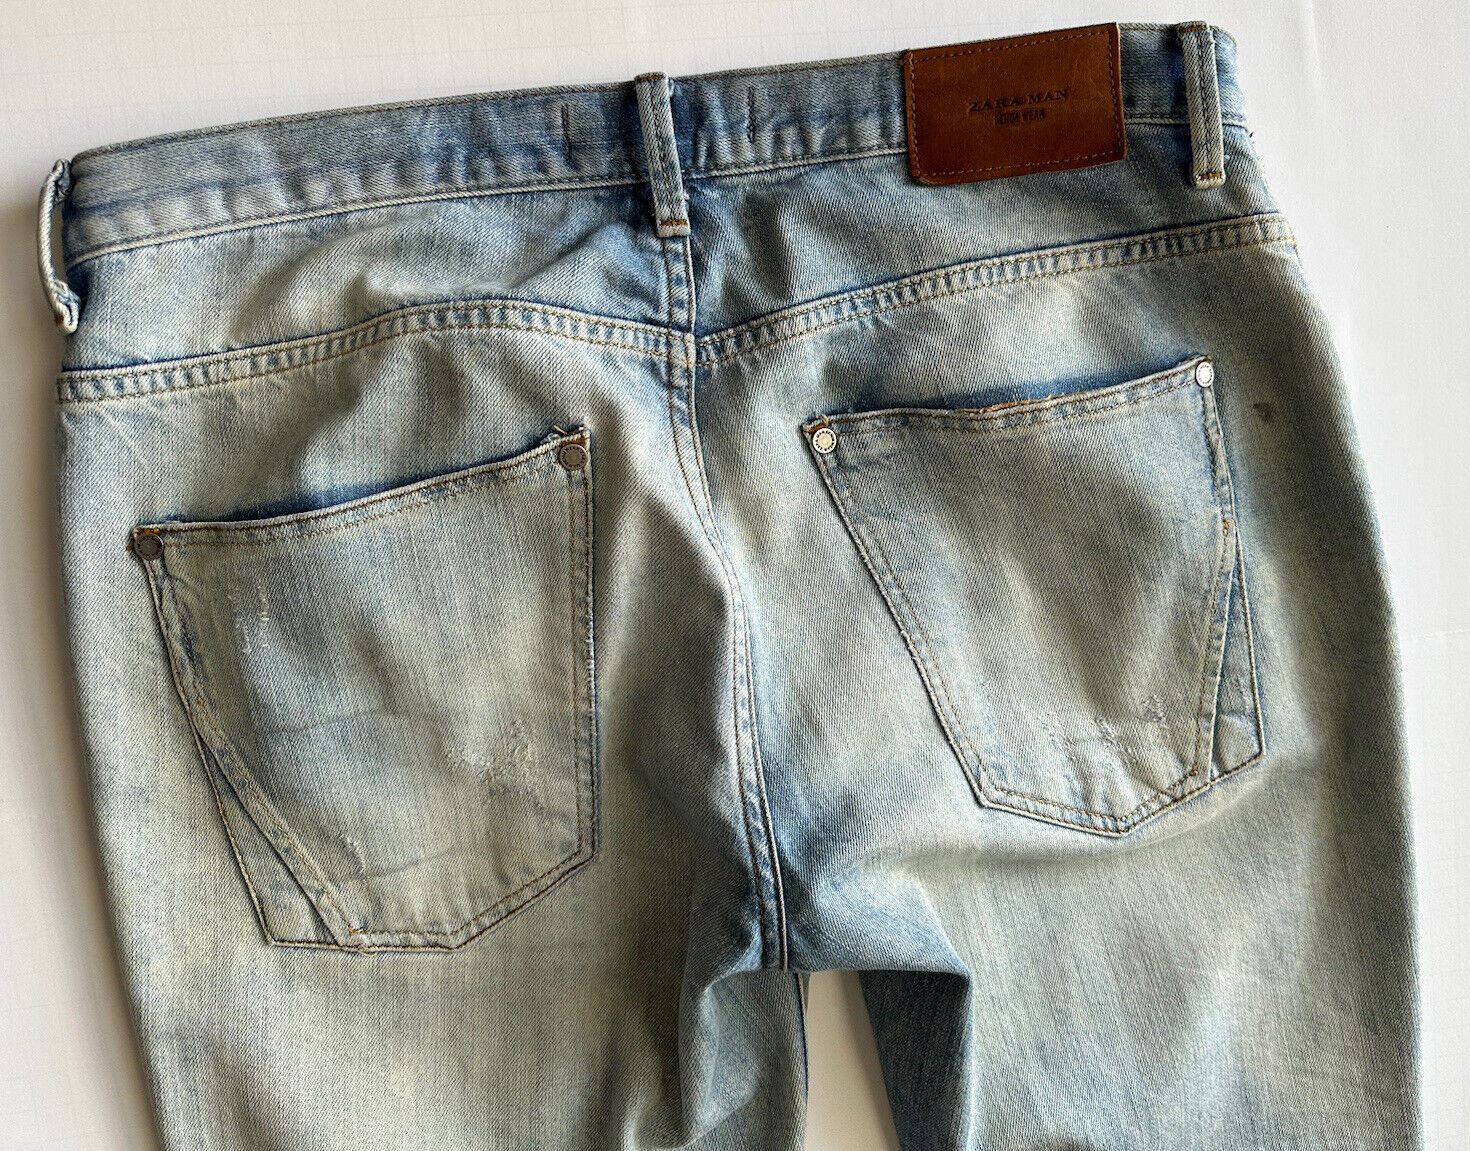 Мужские голубые джинсы из современного денима ZARA, размер 32 (США) (при измерении 34 дюйма)